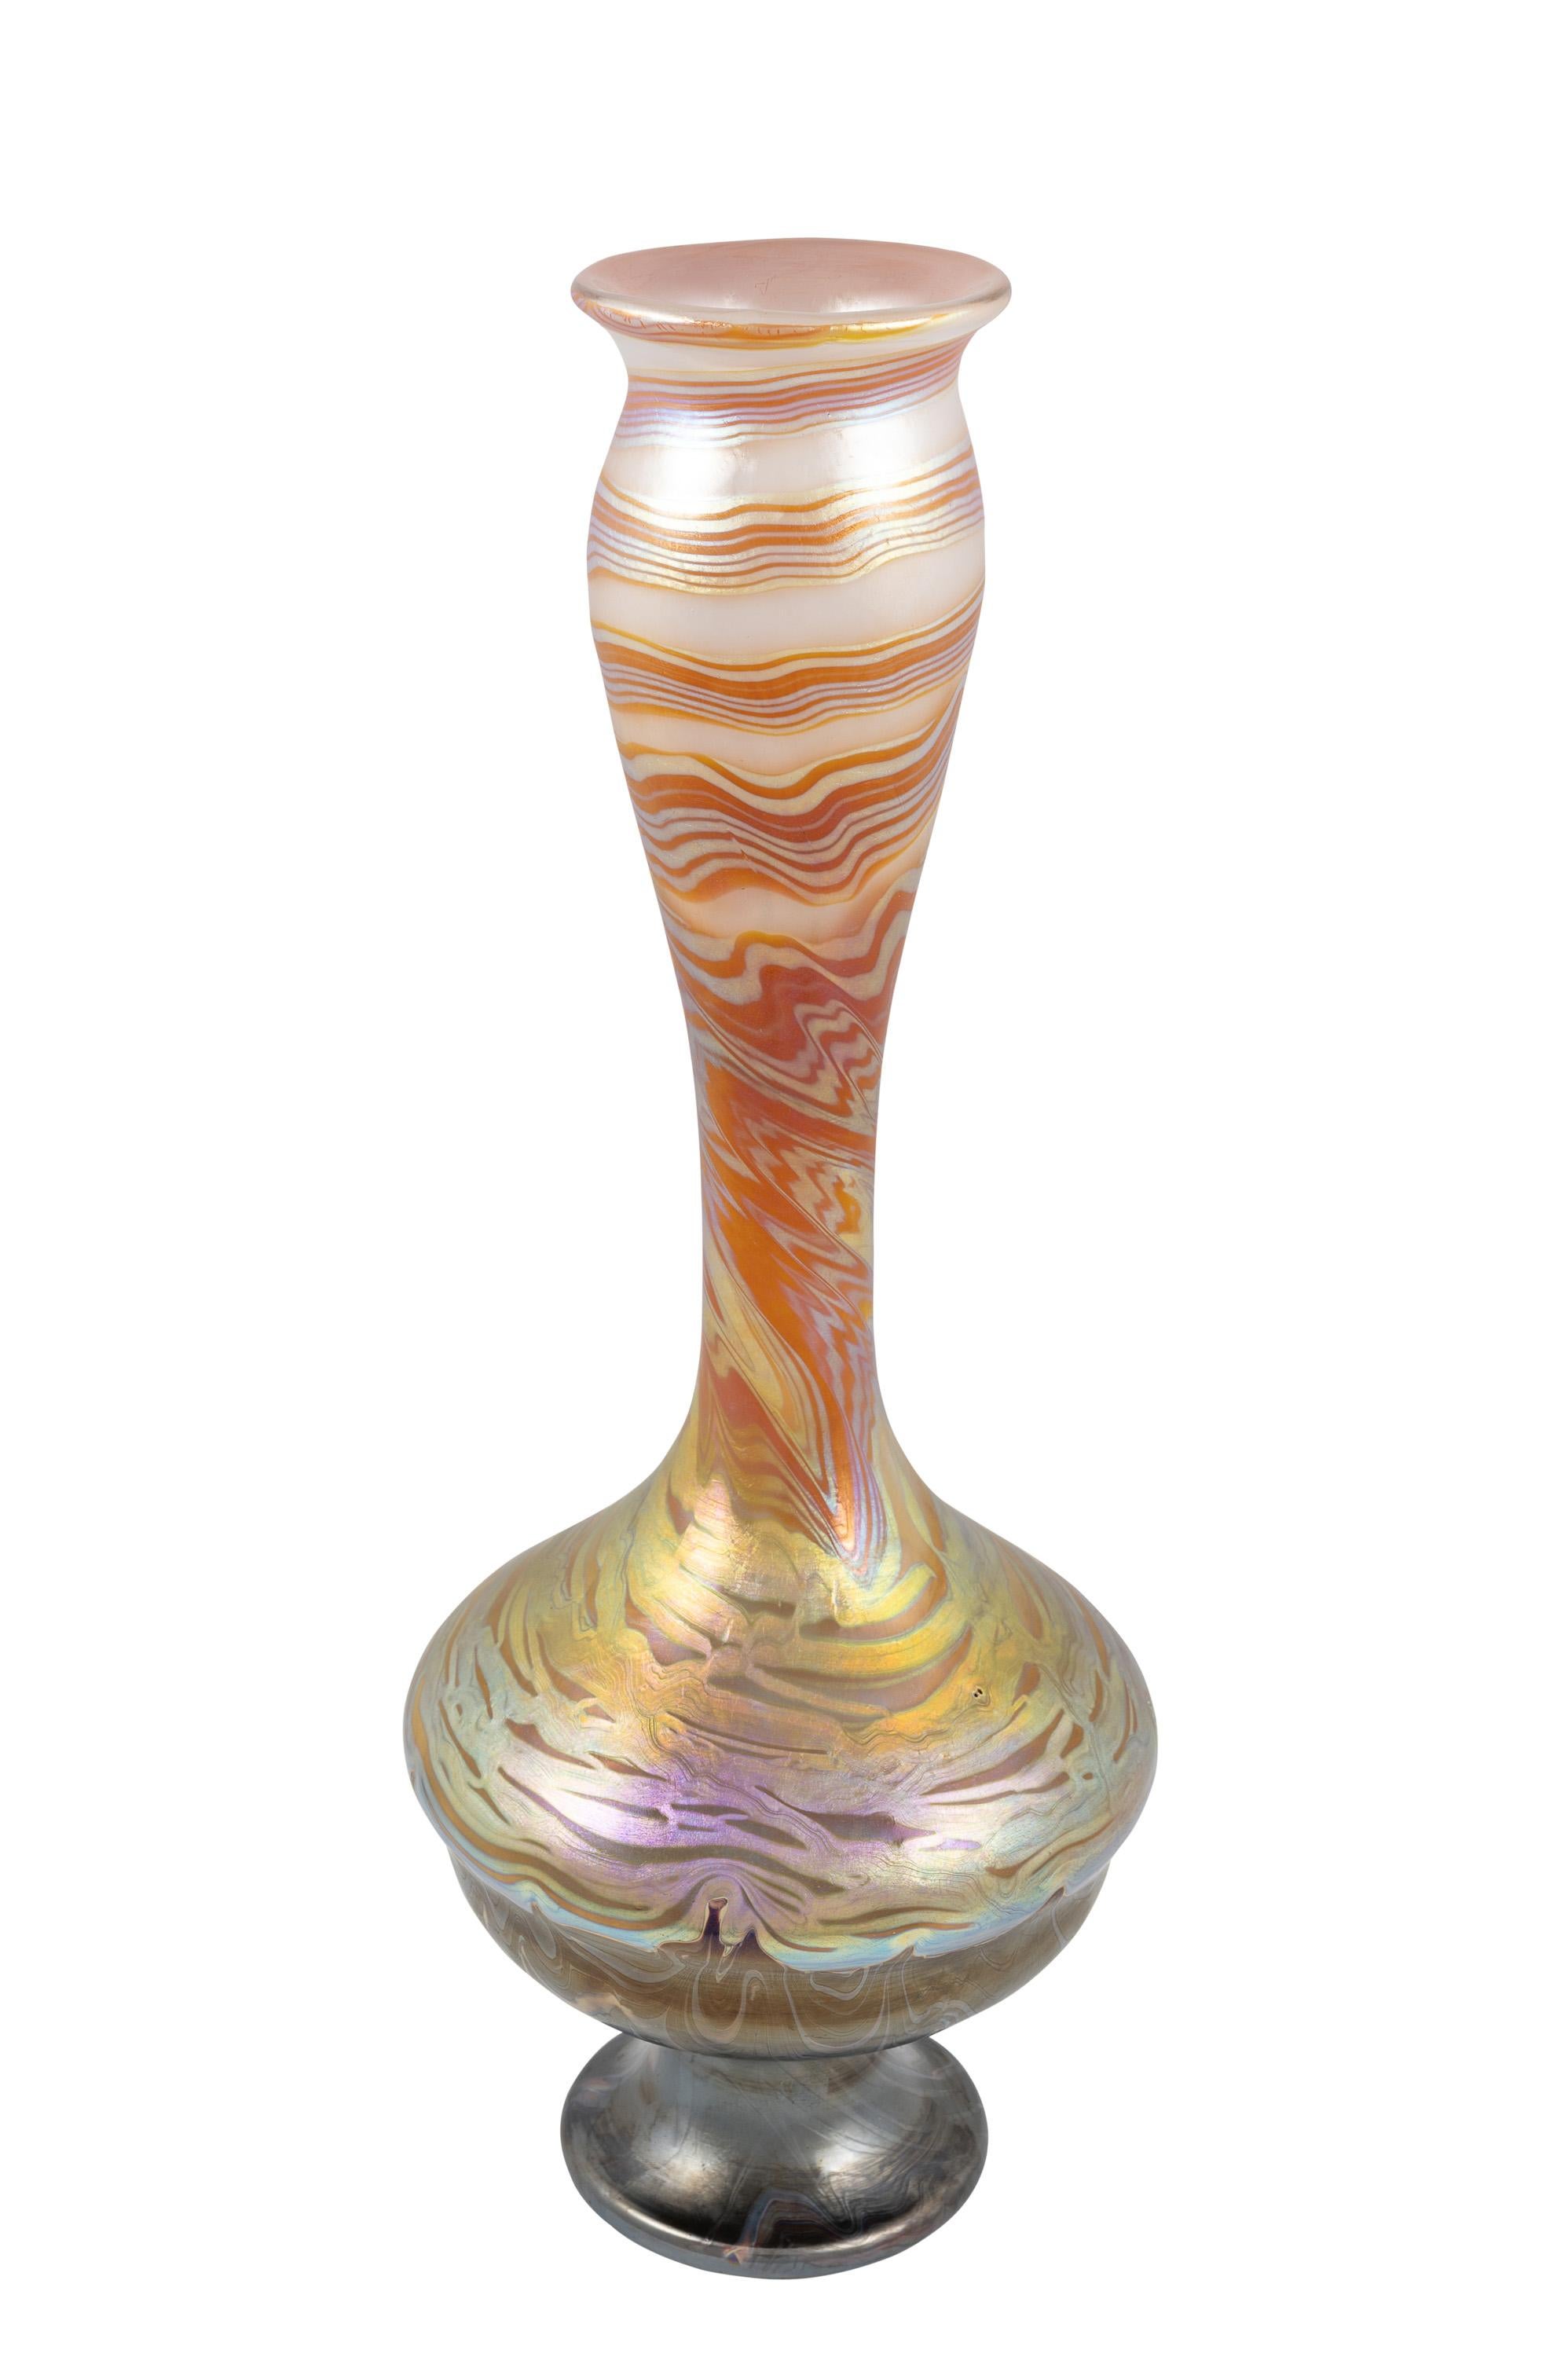 Jugendstil Large Bohemian Glass Vase Loetz PG 387 decoration ca. 1900 Orange Brown Gold  For Sale